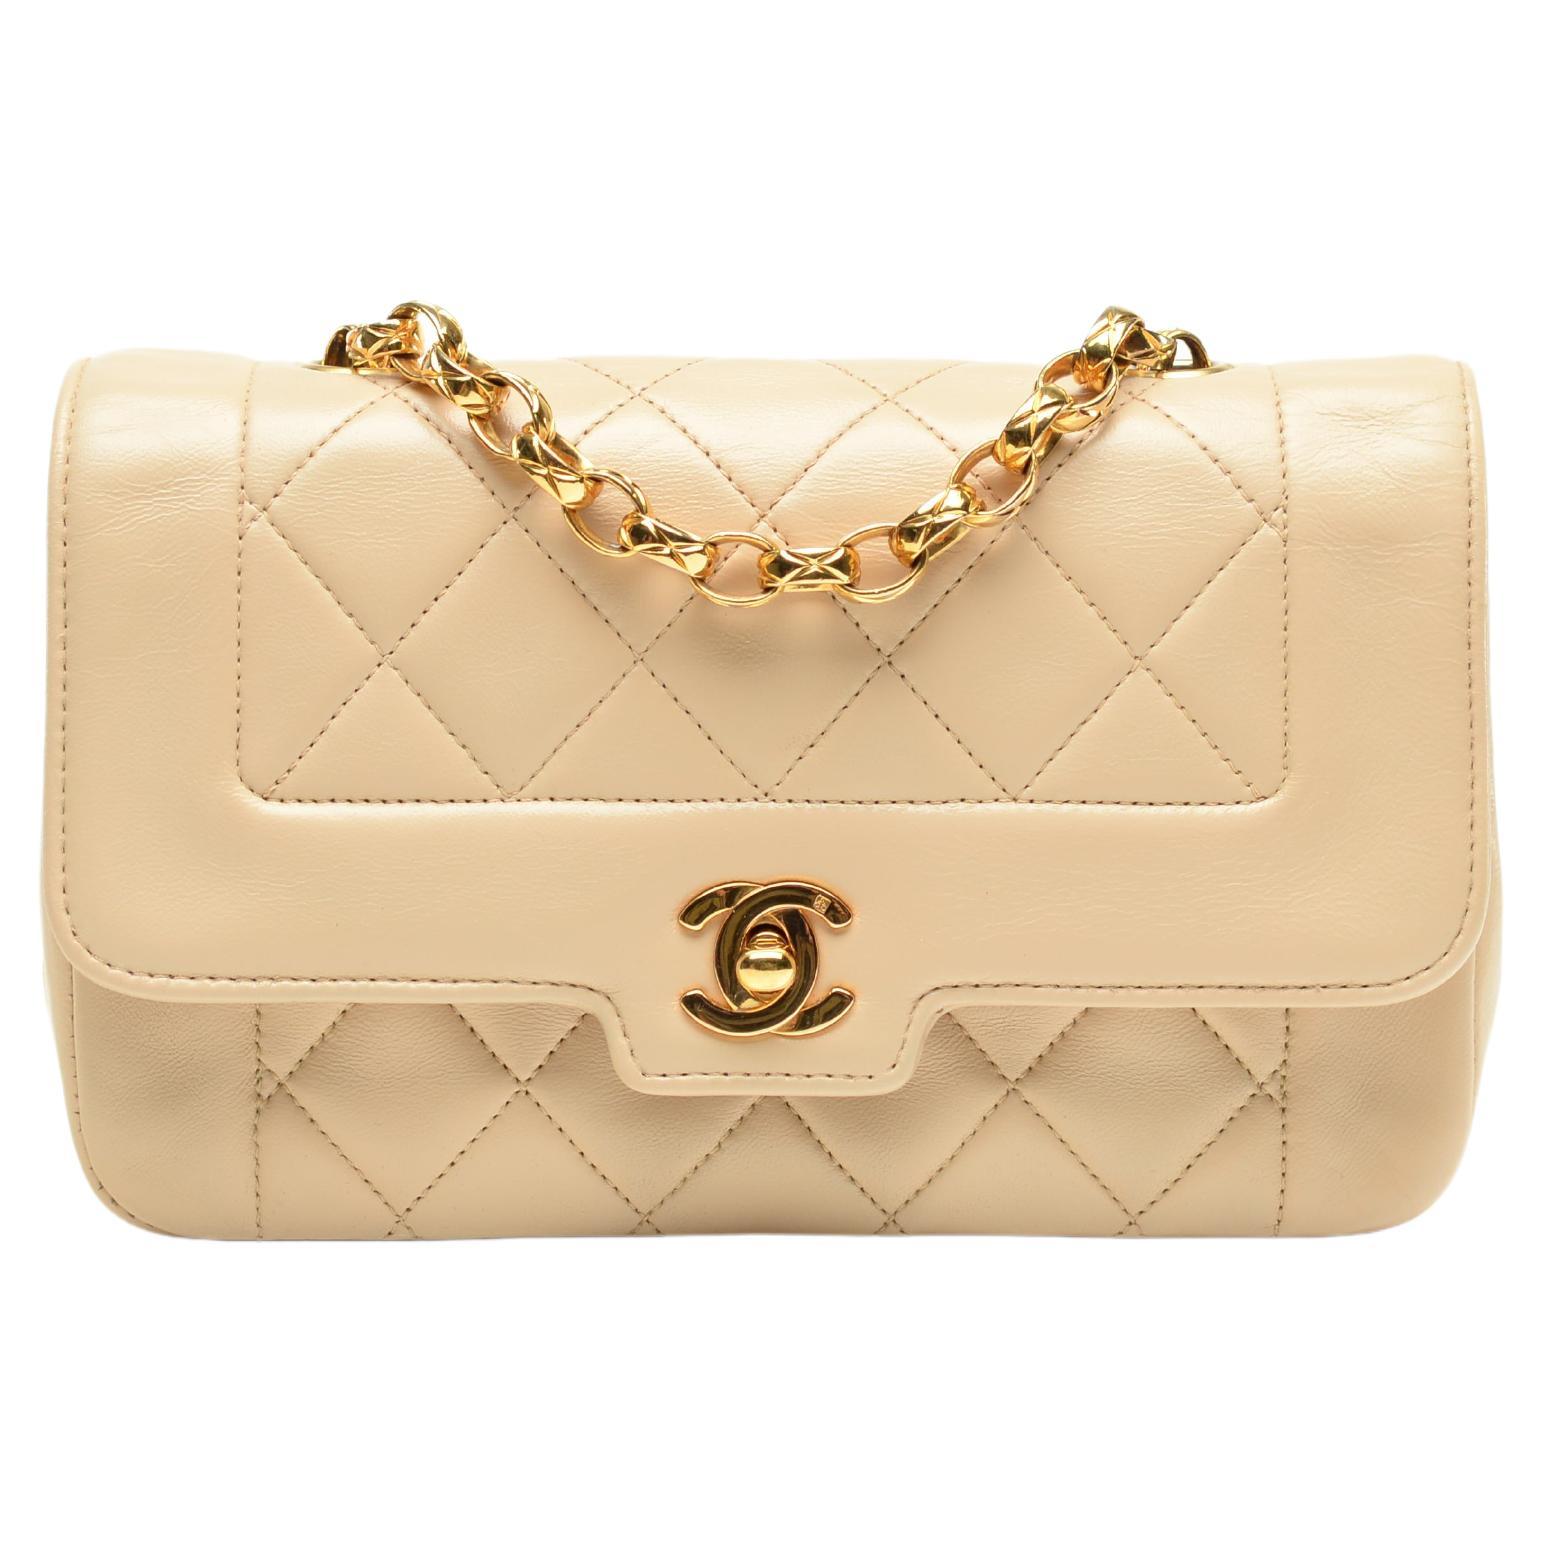 Chanel Beige Diana - 5 For Sale on 1stDibs  beige chanel diana bag, beige  diana chanel, chanel diana bag beige